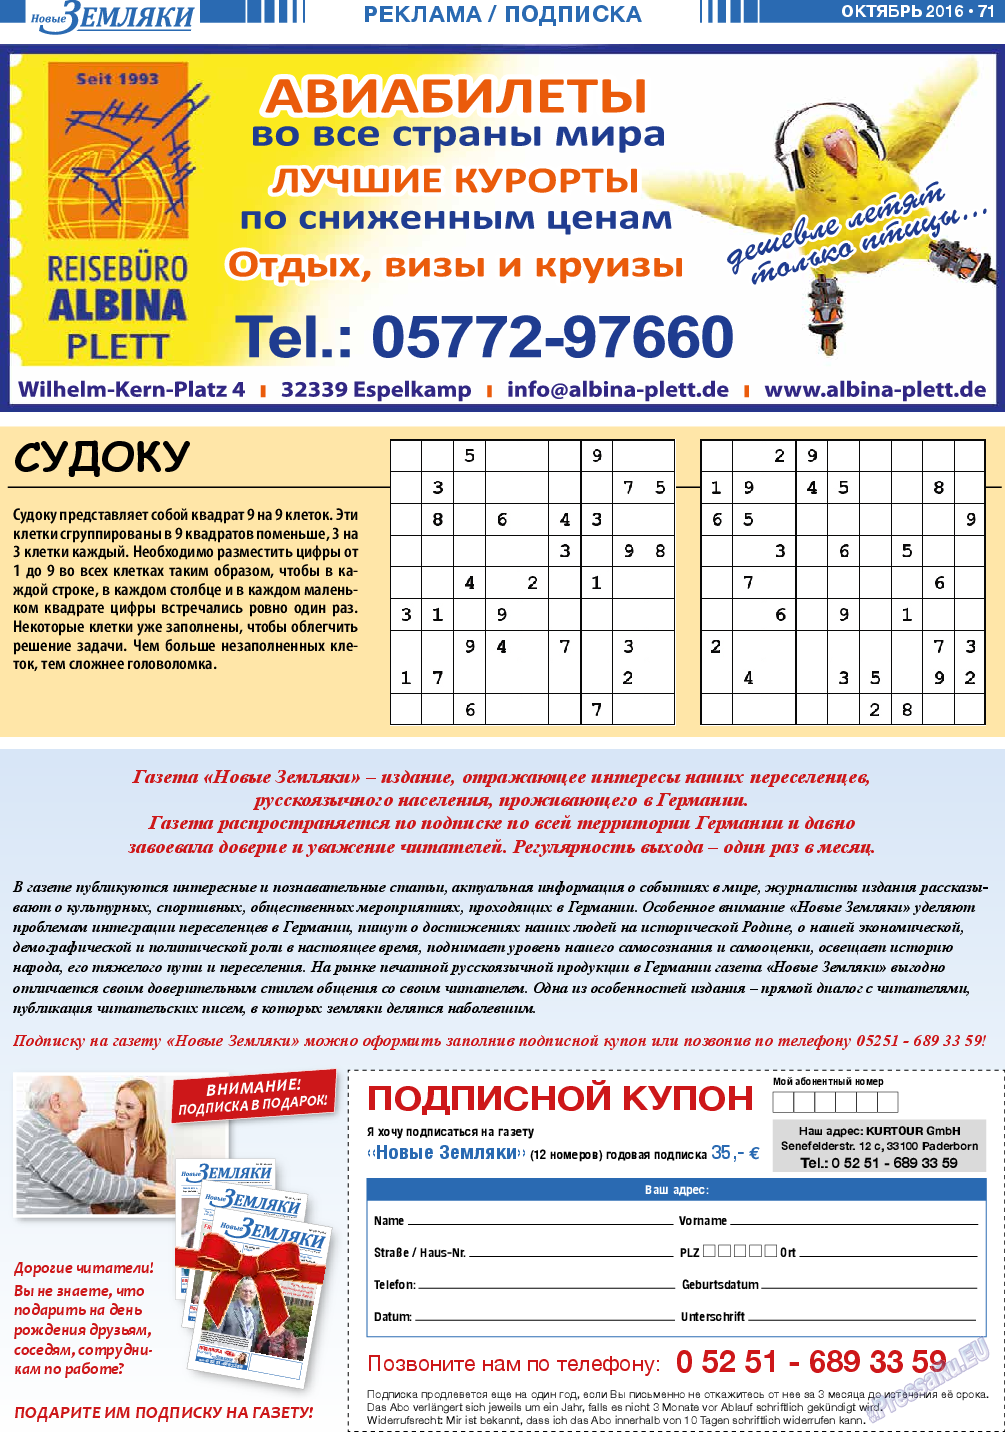 Новые Земляки, газета. 2016 №10 стр.71